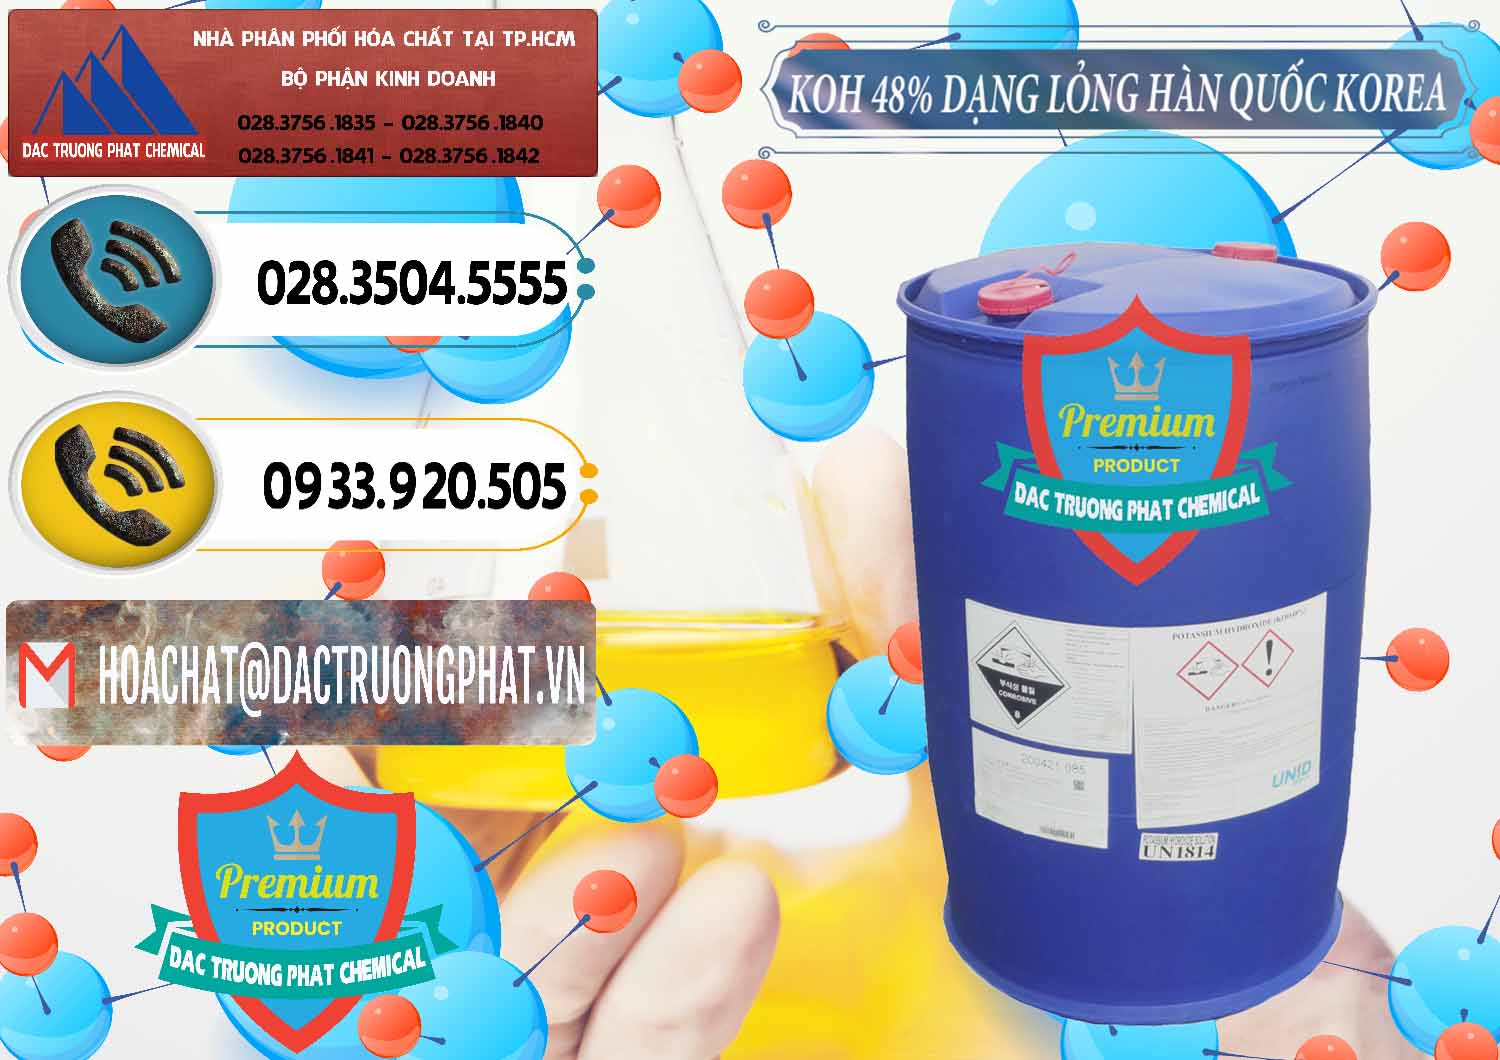 Đơn vị chuyên cung ứng & bán KOH Dạng Nước – Potassium Hydroxide Lỏng 48% Hàn Quốc Korea - 0293 - Đơn vị chuyên phân phối _ cung ứng hóa chất tại TP.HCM - hoachatdetnhuom.vn